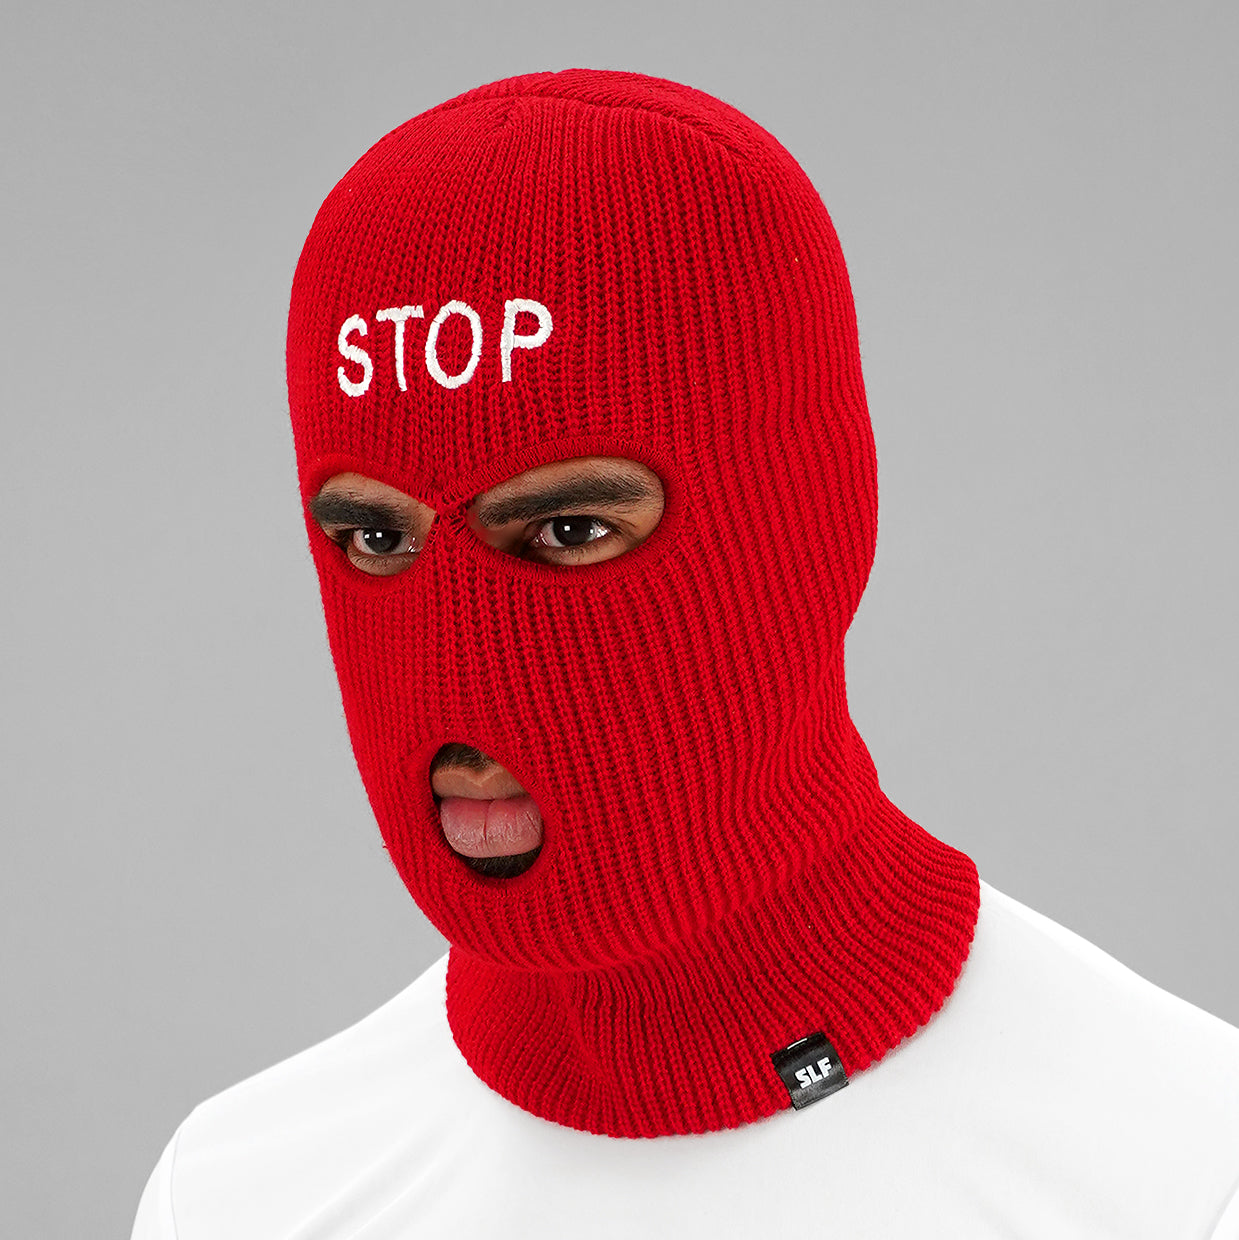 STOP Ski Mask